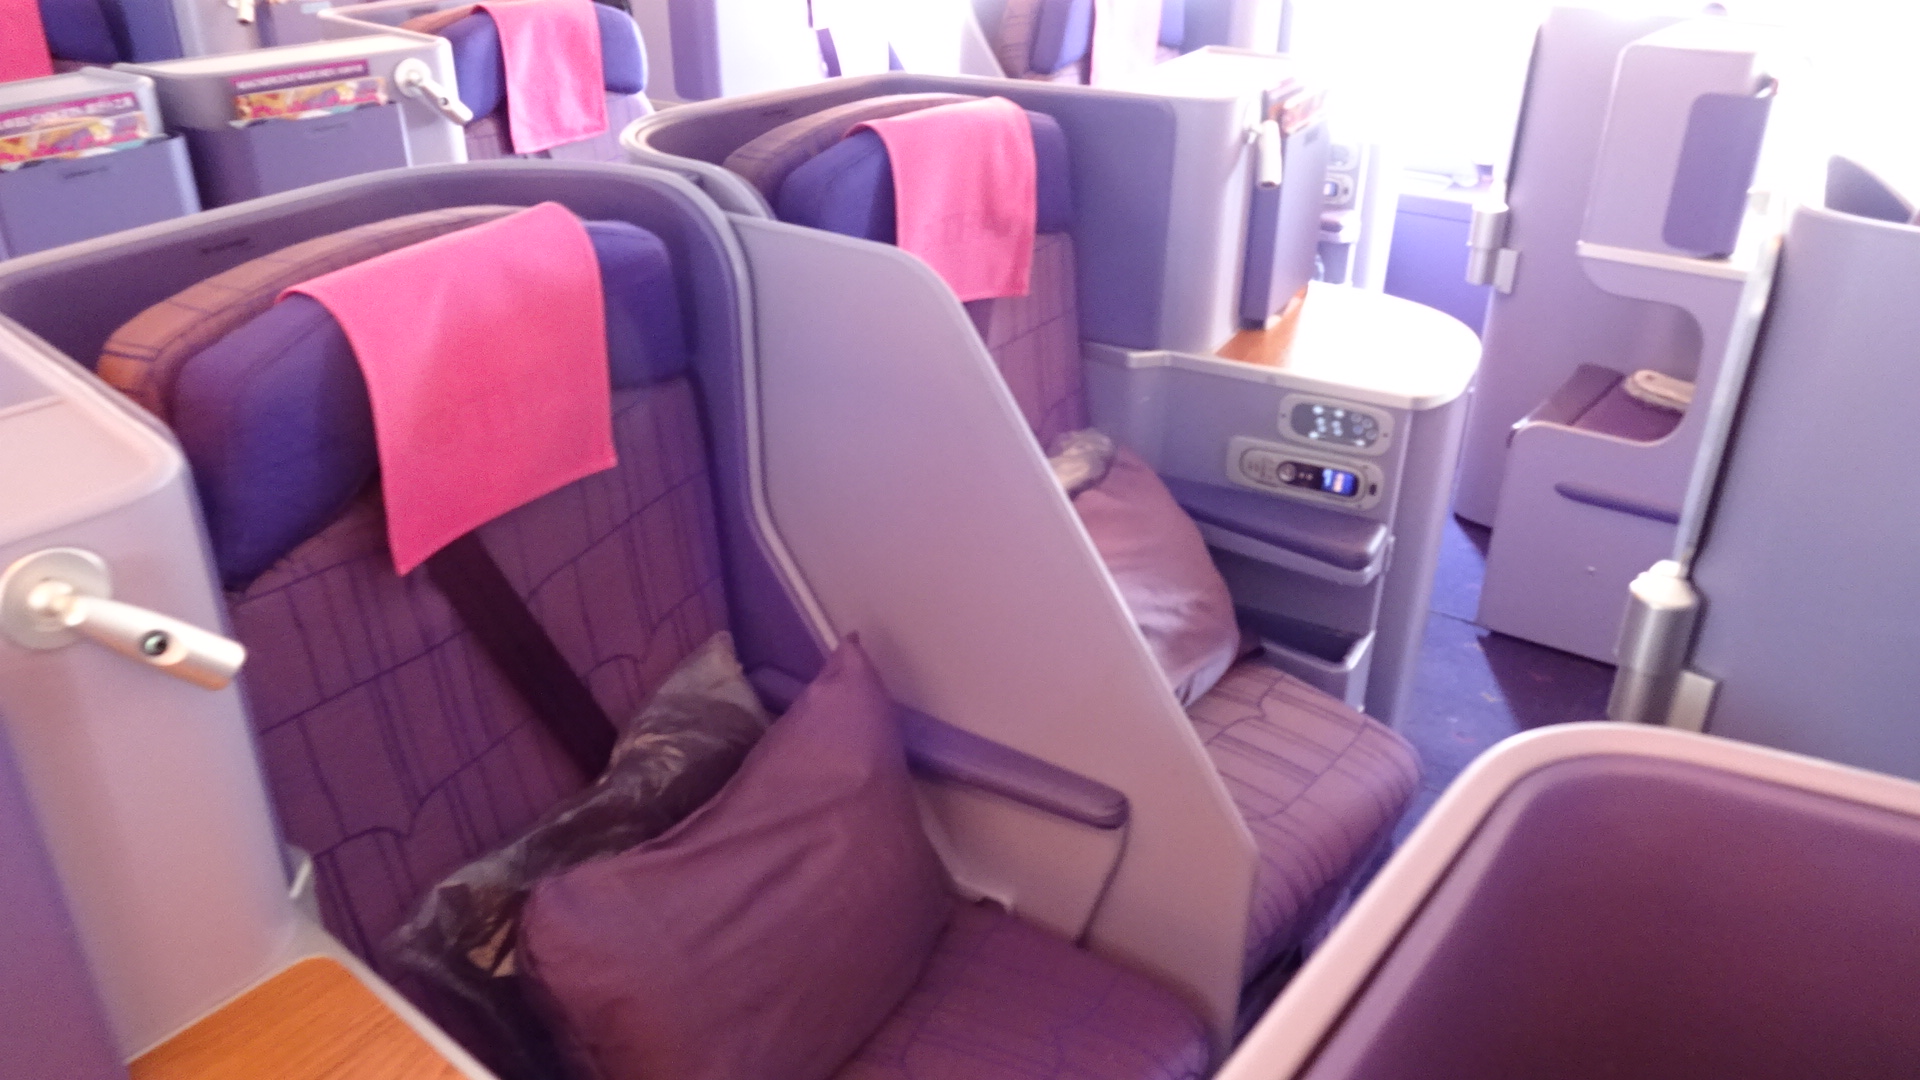 タイ航空 エアバスA380 ビジネスクラス スタッガード